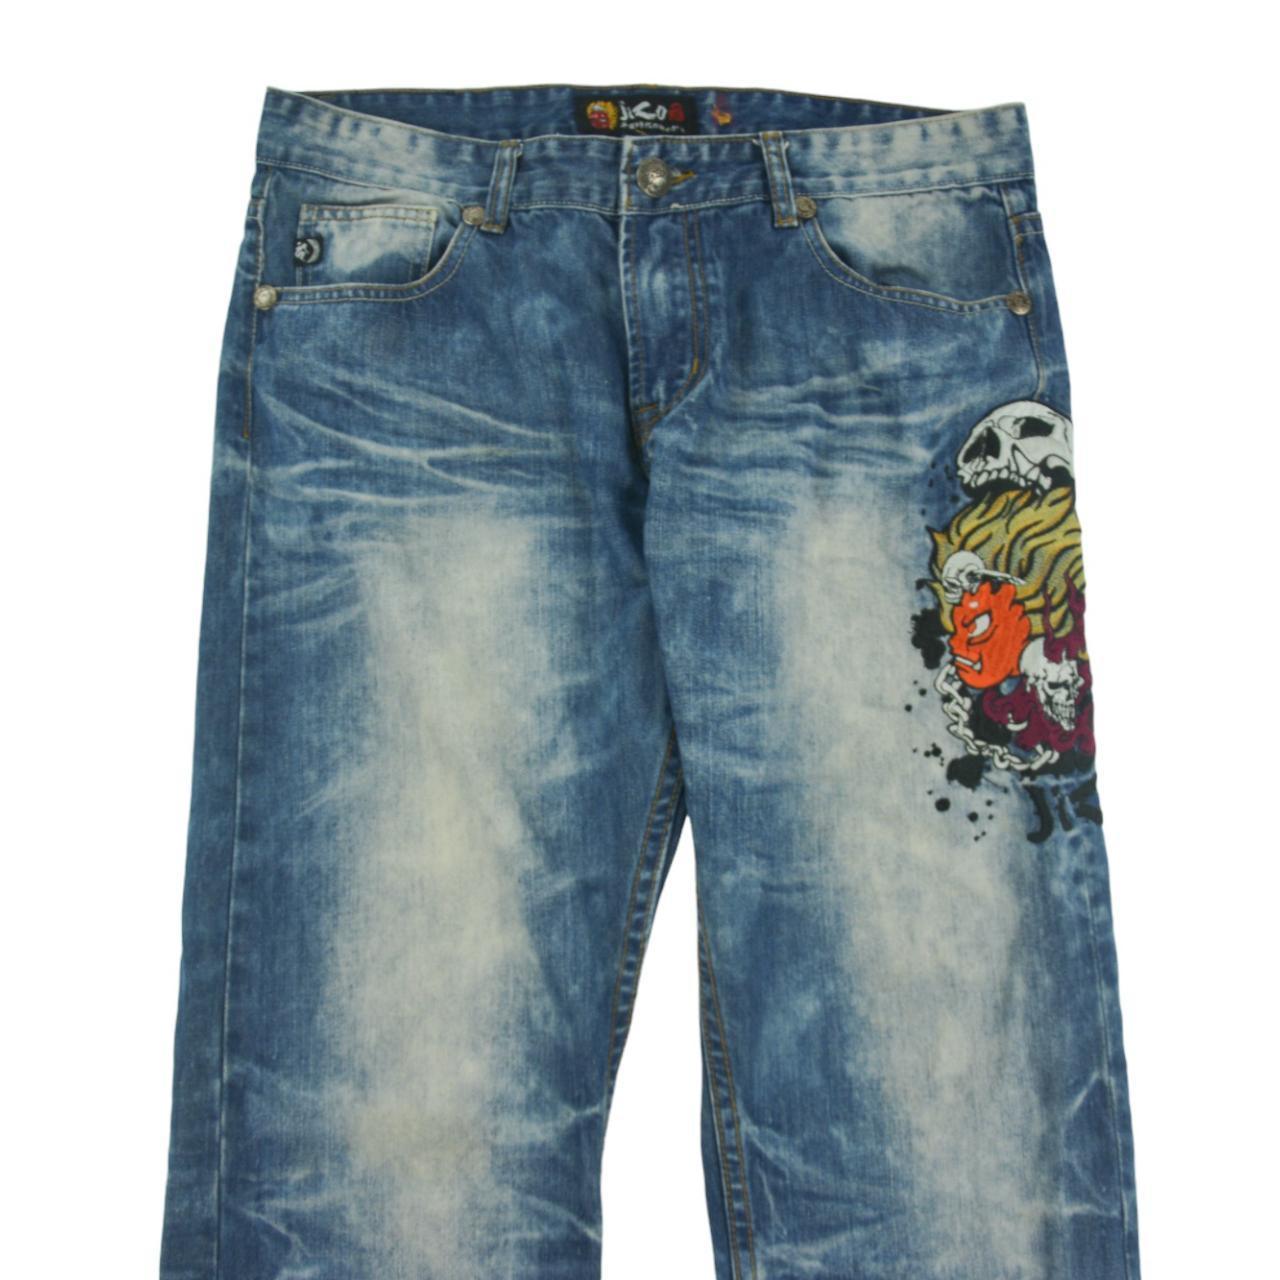 Vintage Jizo Japanese Denim Jeans Size W35 - Known Source